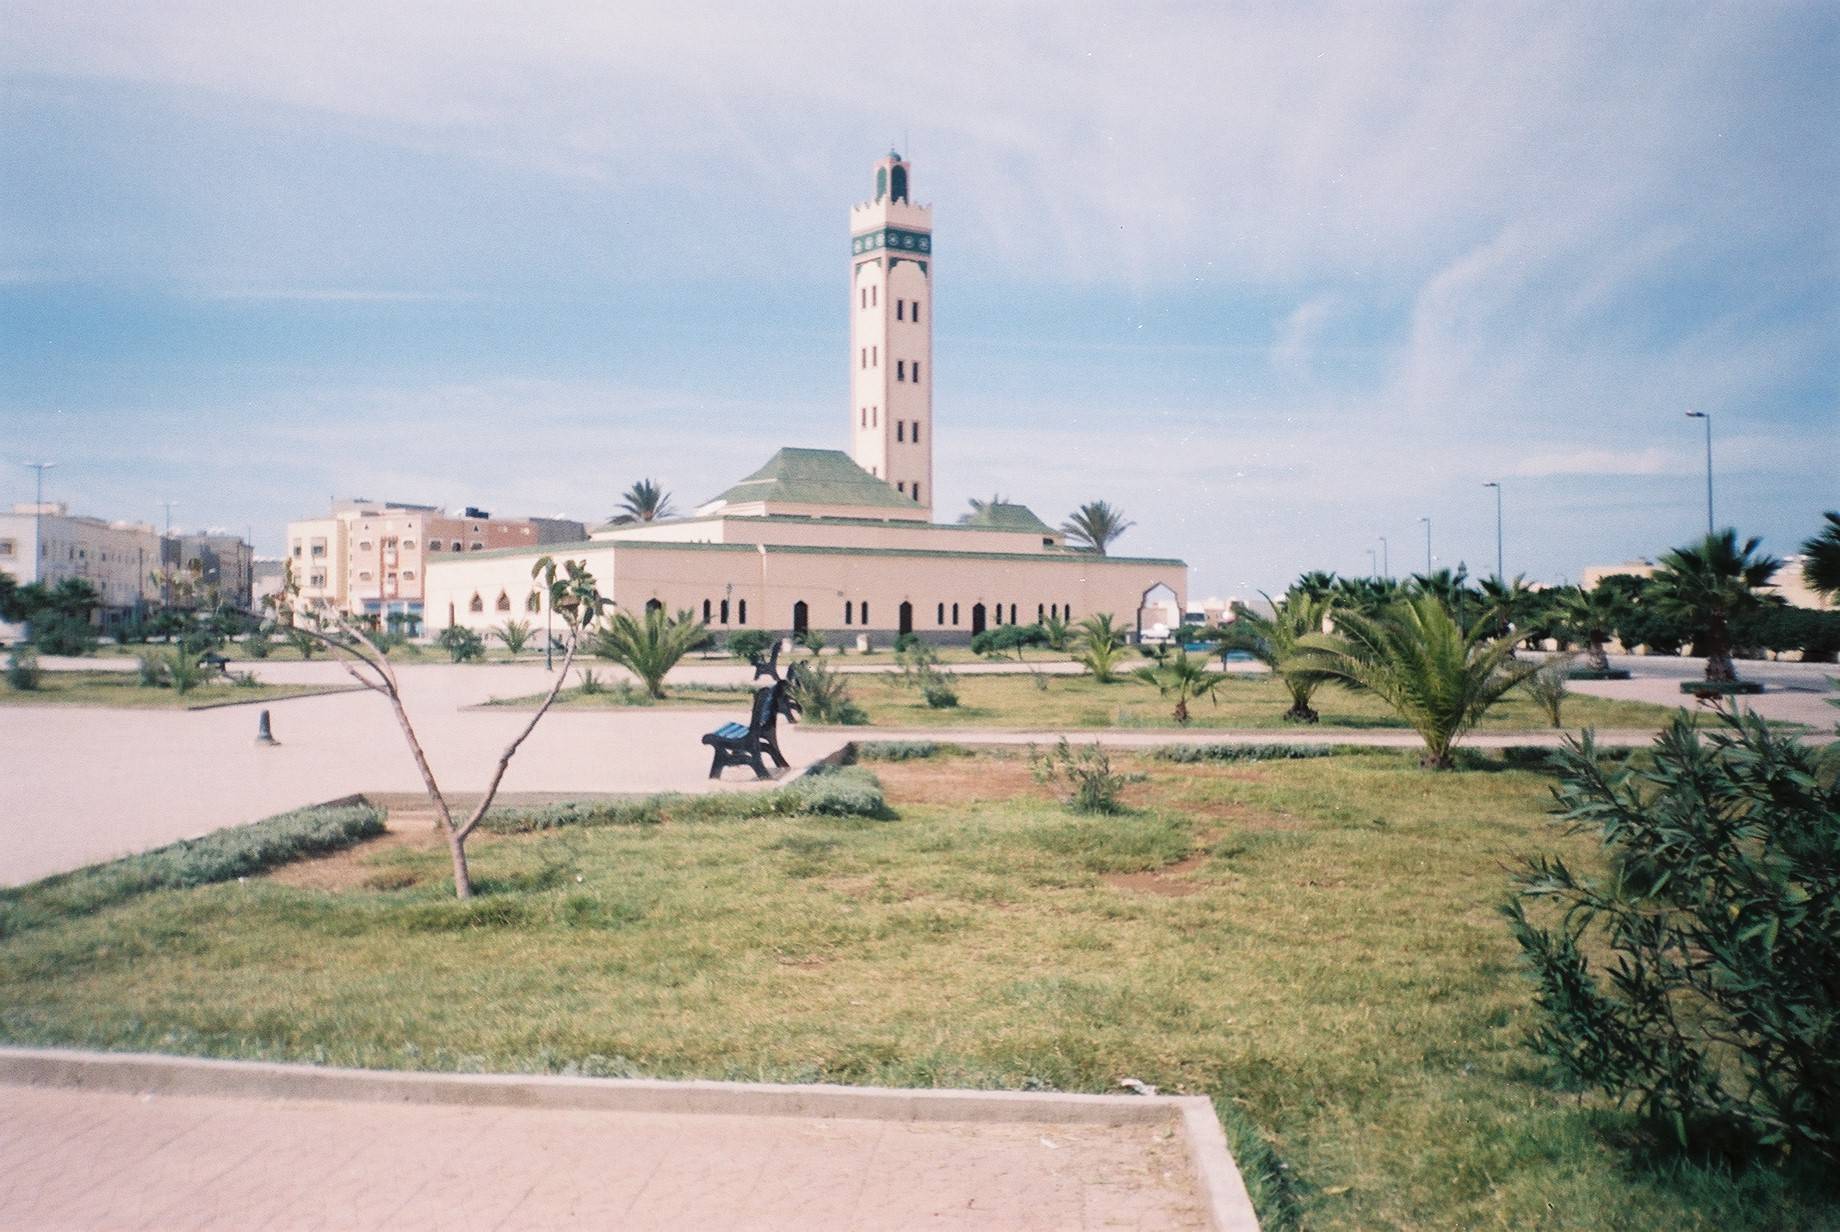 Vue de la mosquée de Dakhla, ville sous contrôle marocain.
Crédit photo : Radosław Botev